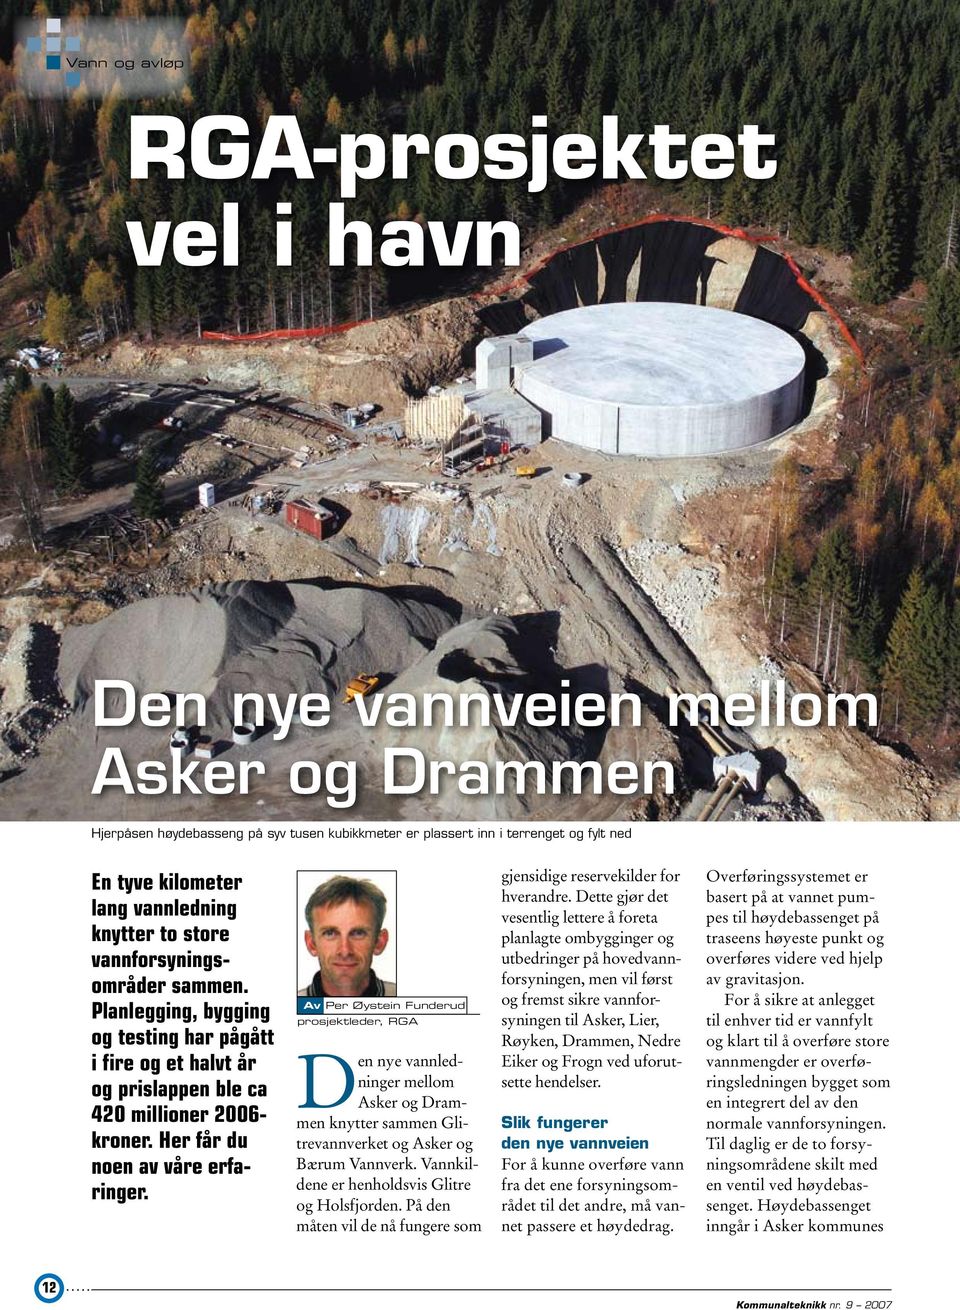 Her får du noen av våre erfaringer. Av Per Øystein Funderud prosjektleder, RGA Den nye vannledninger mellom Asker og Drammen knytter sammen Glitrevannverket og Asker og Bærum Vannverk.